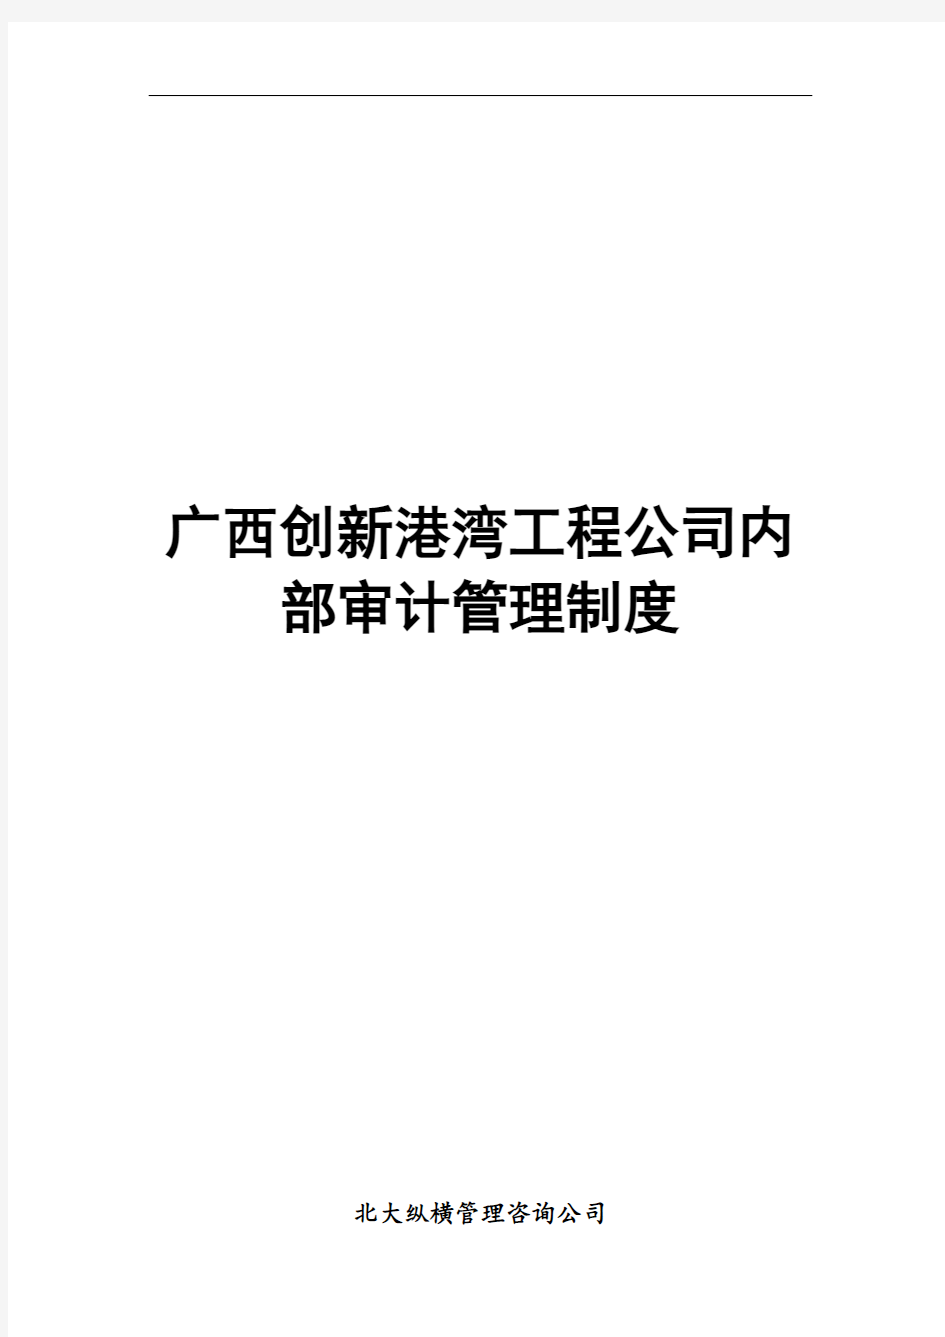 广西创新港湾工程公司内部审计管理规定